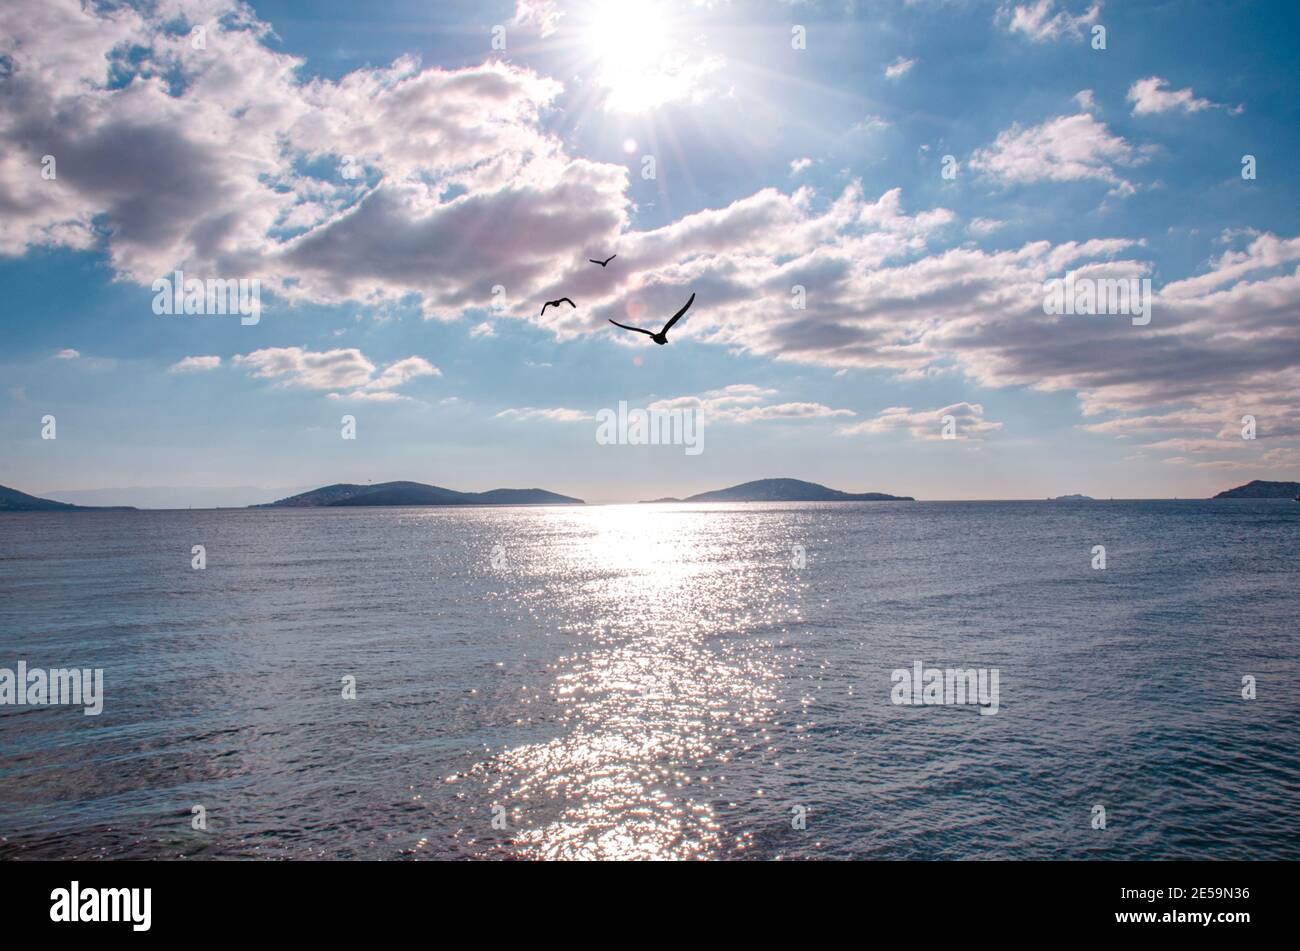 voyage de liberté, ciel marin et paix. seagull, jonathan livingston Banque D'Images